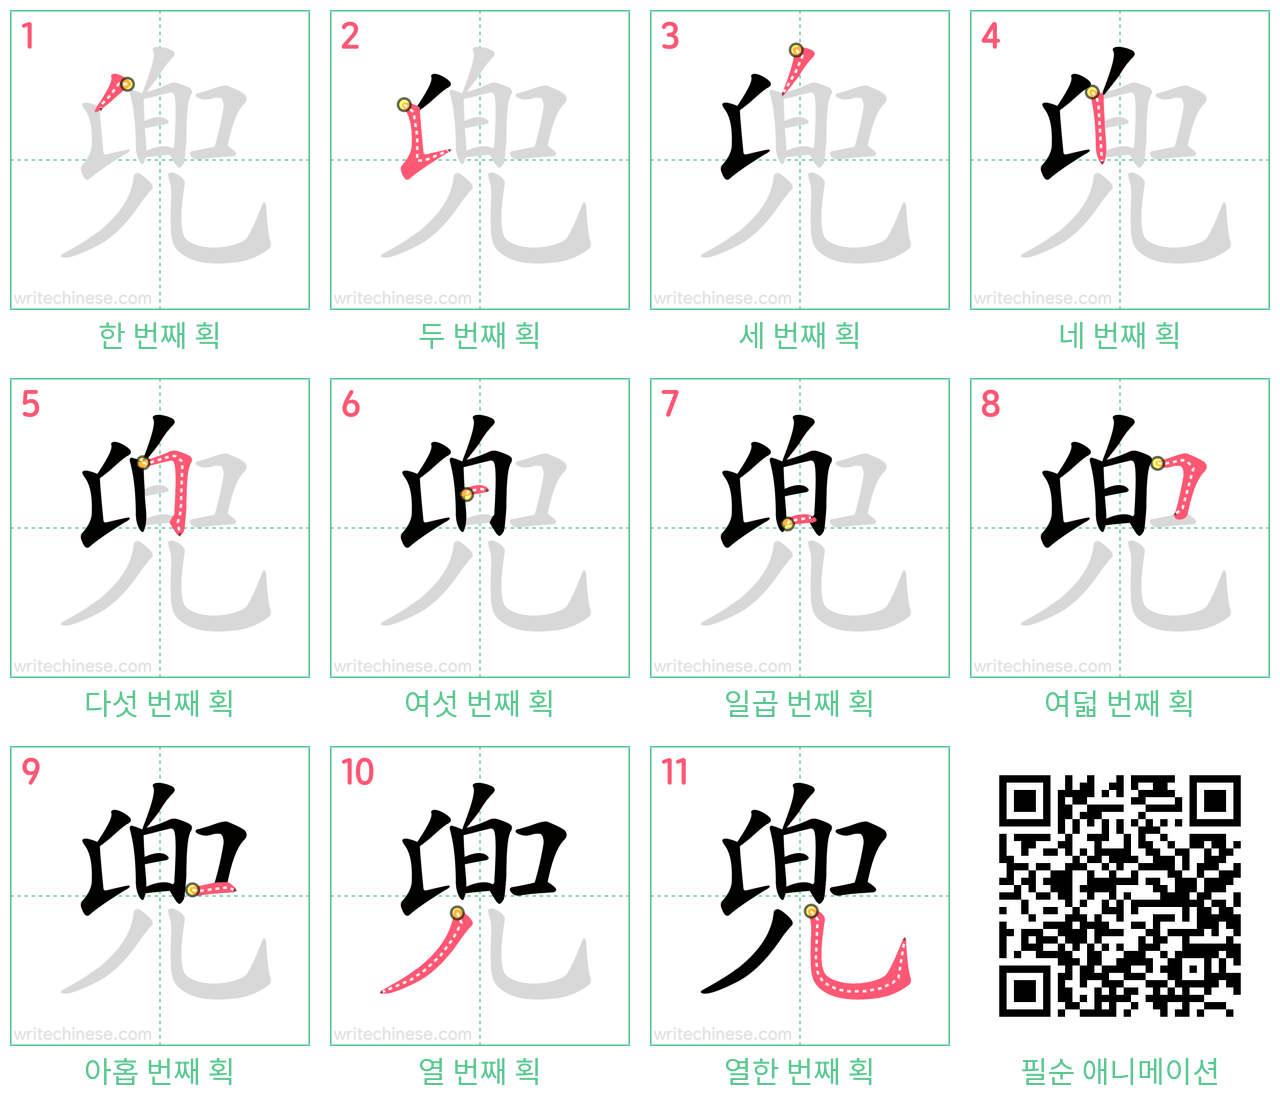 兜 step-by-step stroke order diagrams